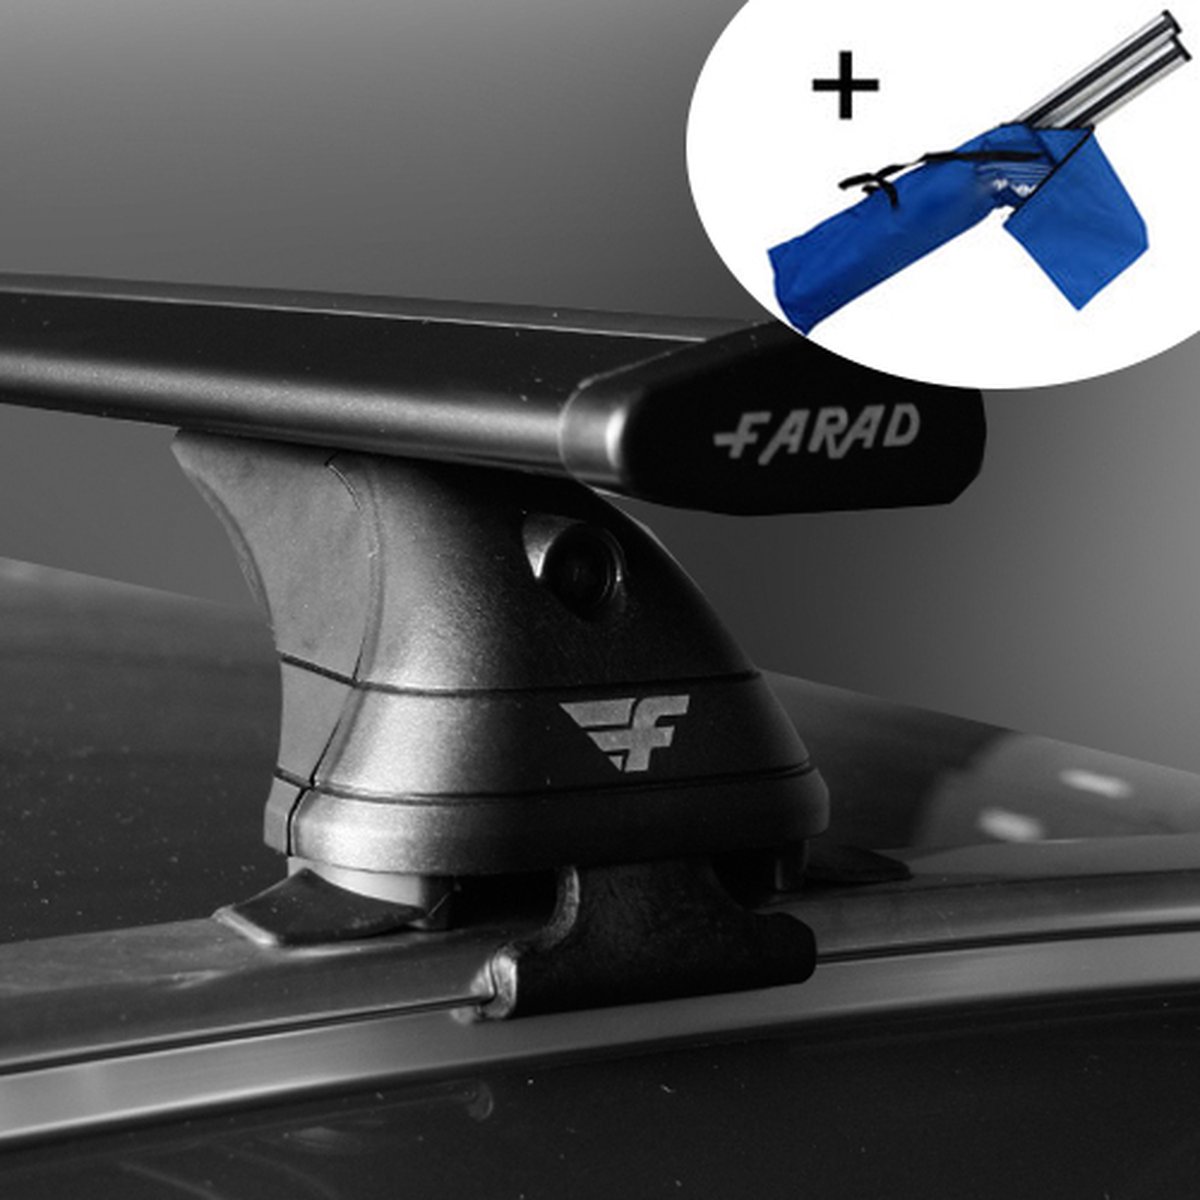 Dakdragers geschikt voor Mini Cooper 5 deurs hatchback vanaf 2014 - Wingbar zwart - inclusief dakdrager opbergtas